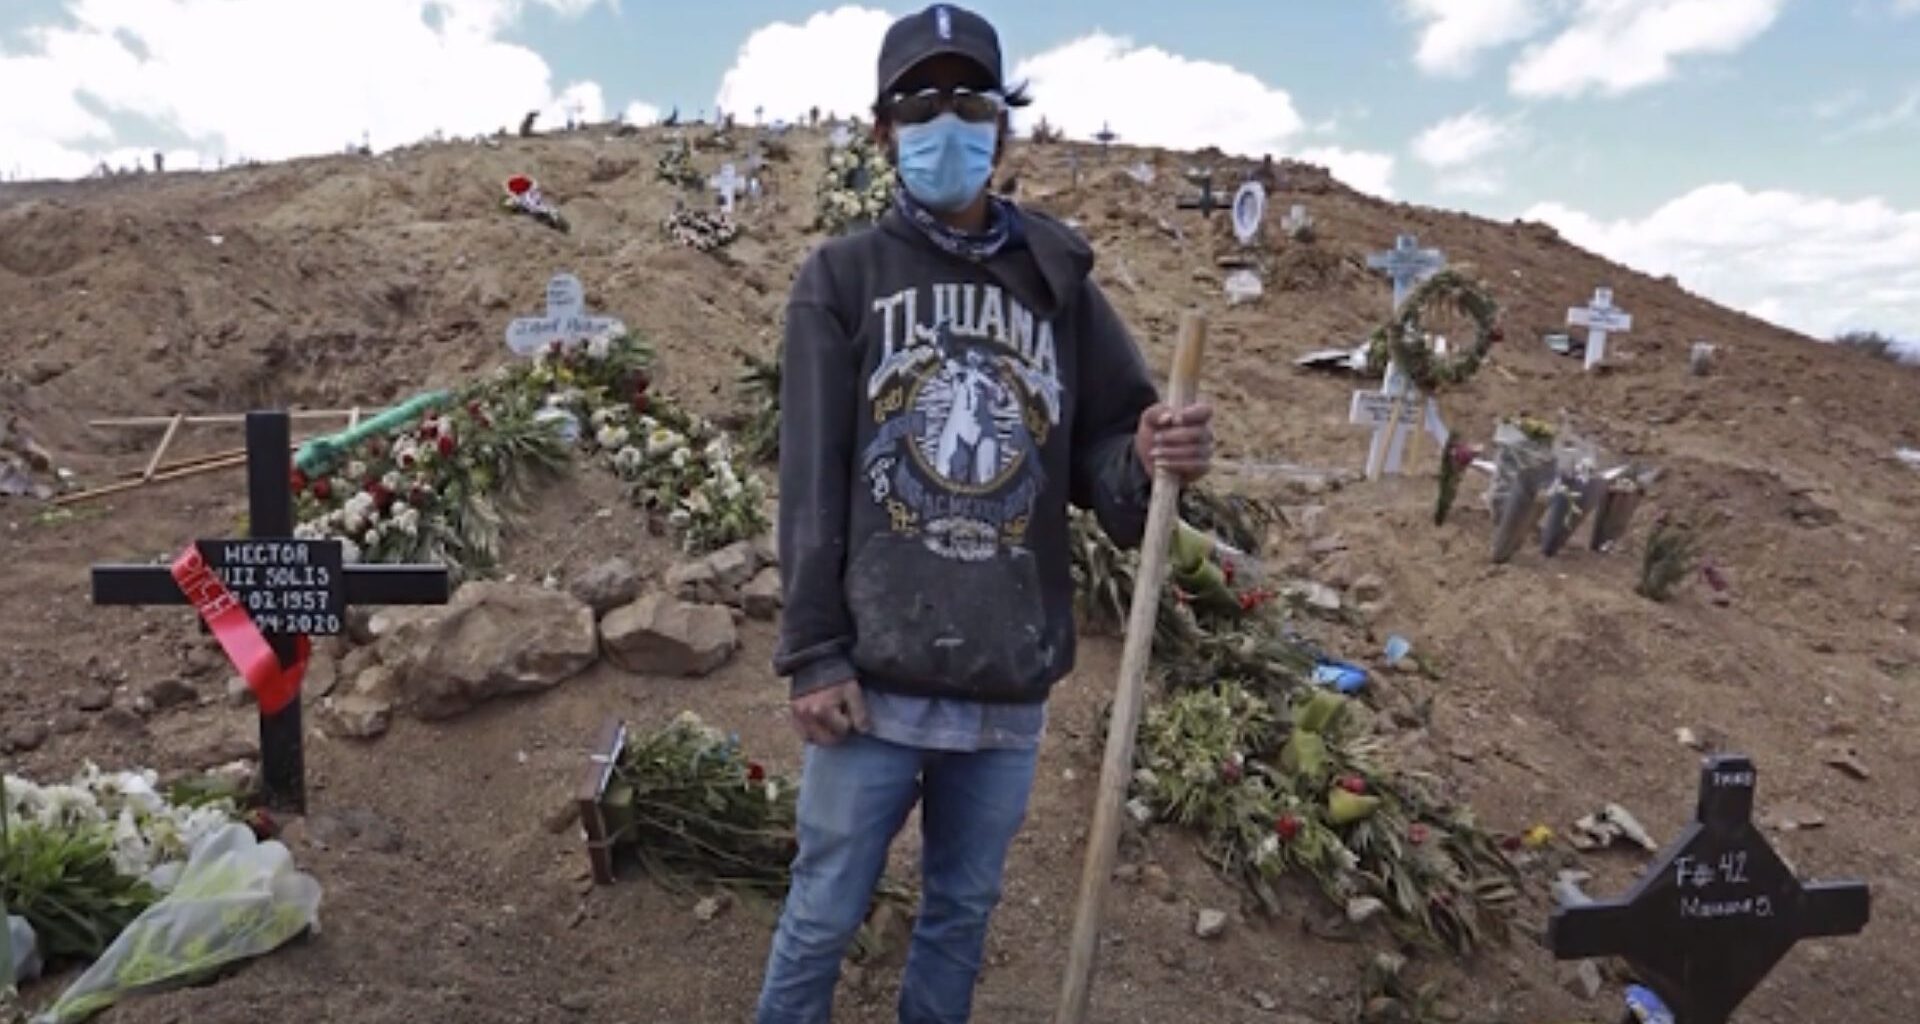 hombre con sudadera que dice Tijuana, gorra y cubrebocas sostiene un palo en medio del cementerio